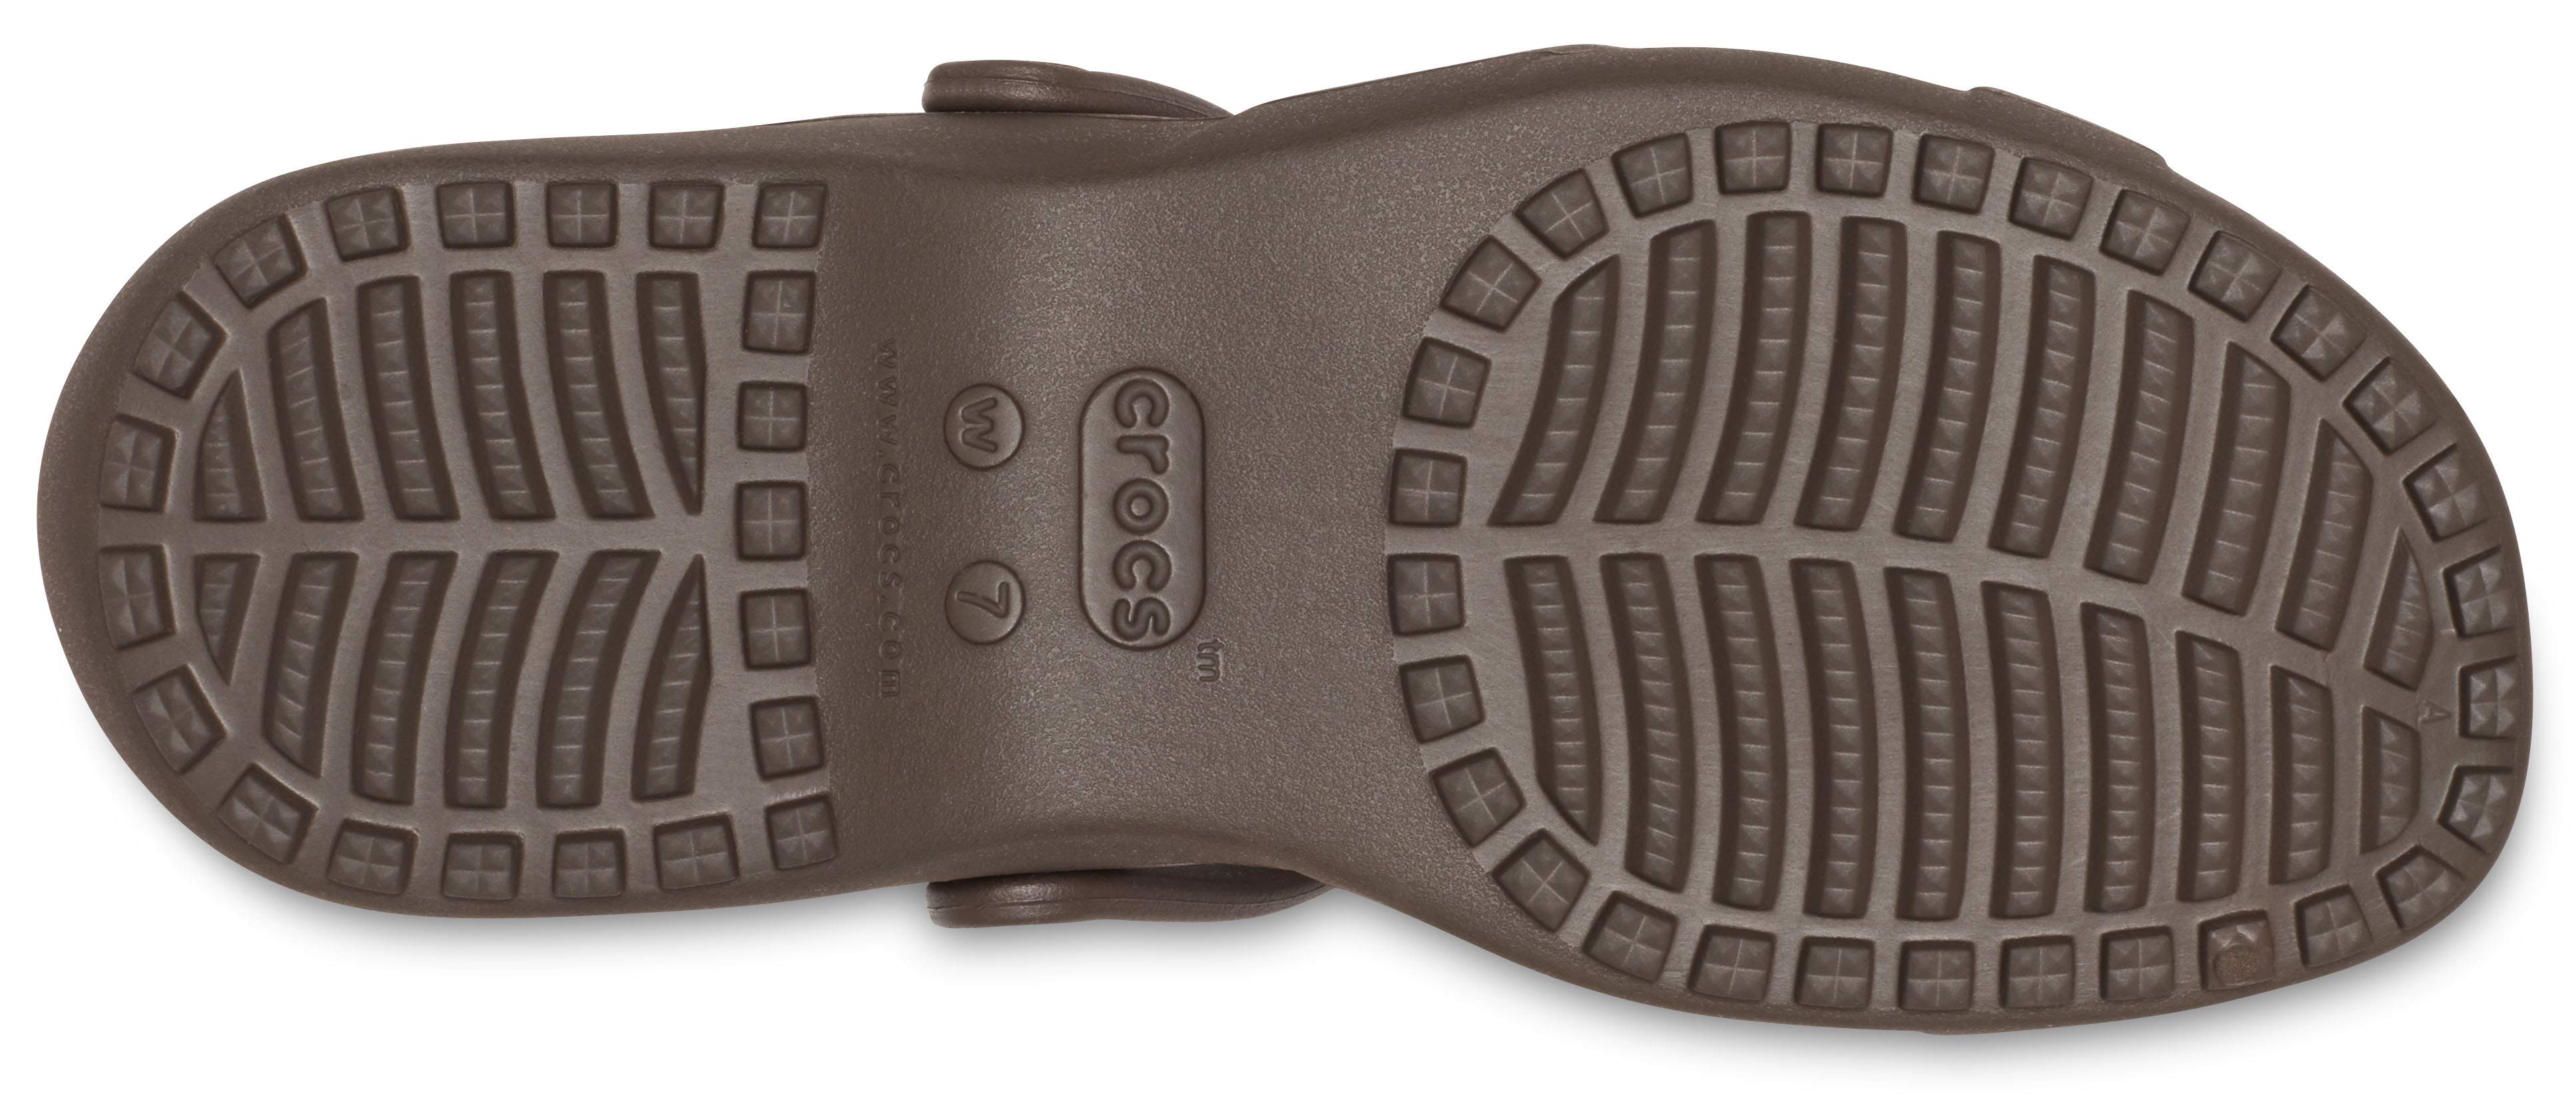 crocs meleen sandal